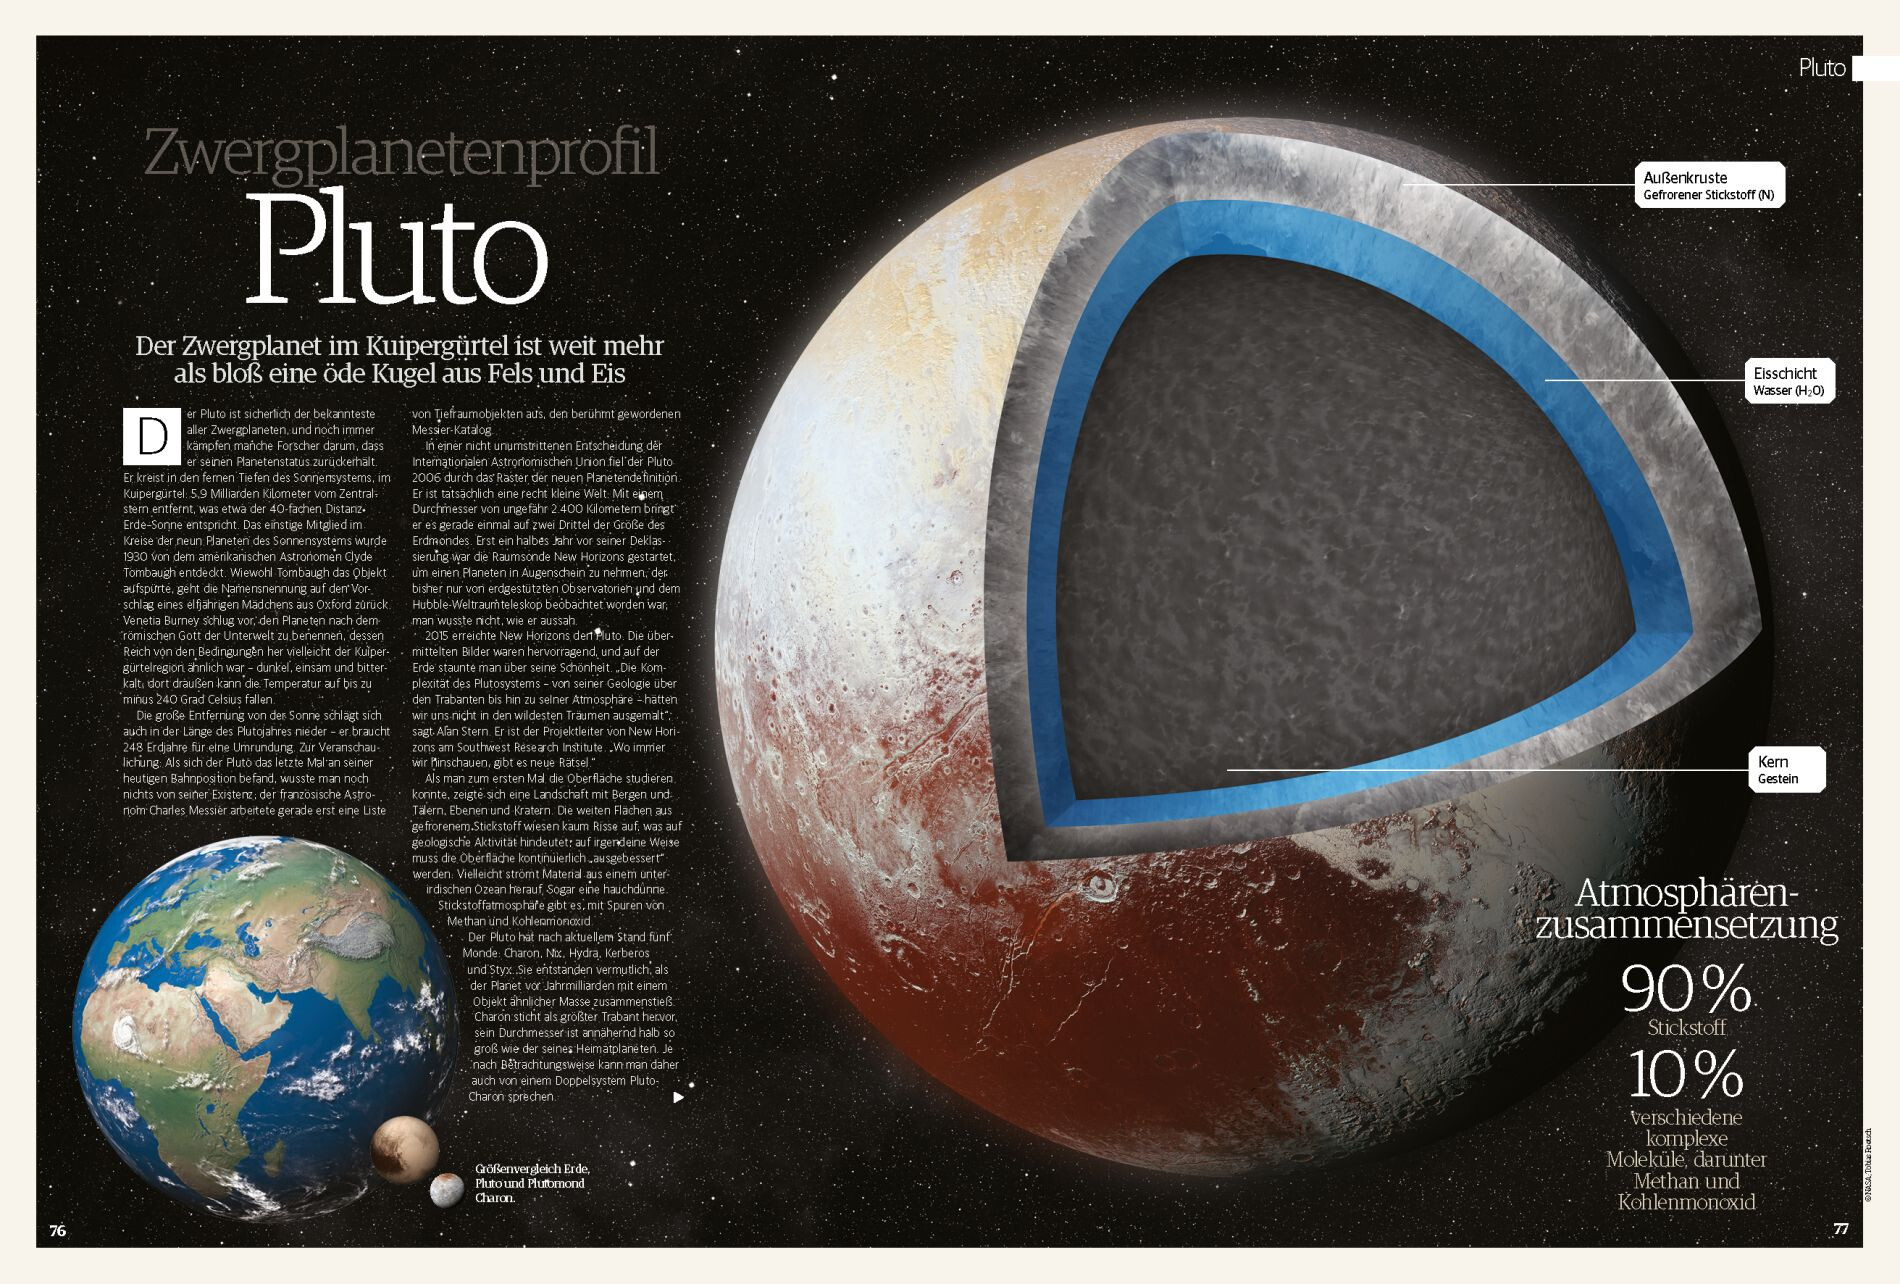 Space Weltraum Magazin 01/2020